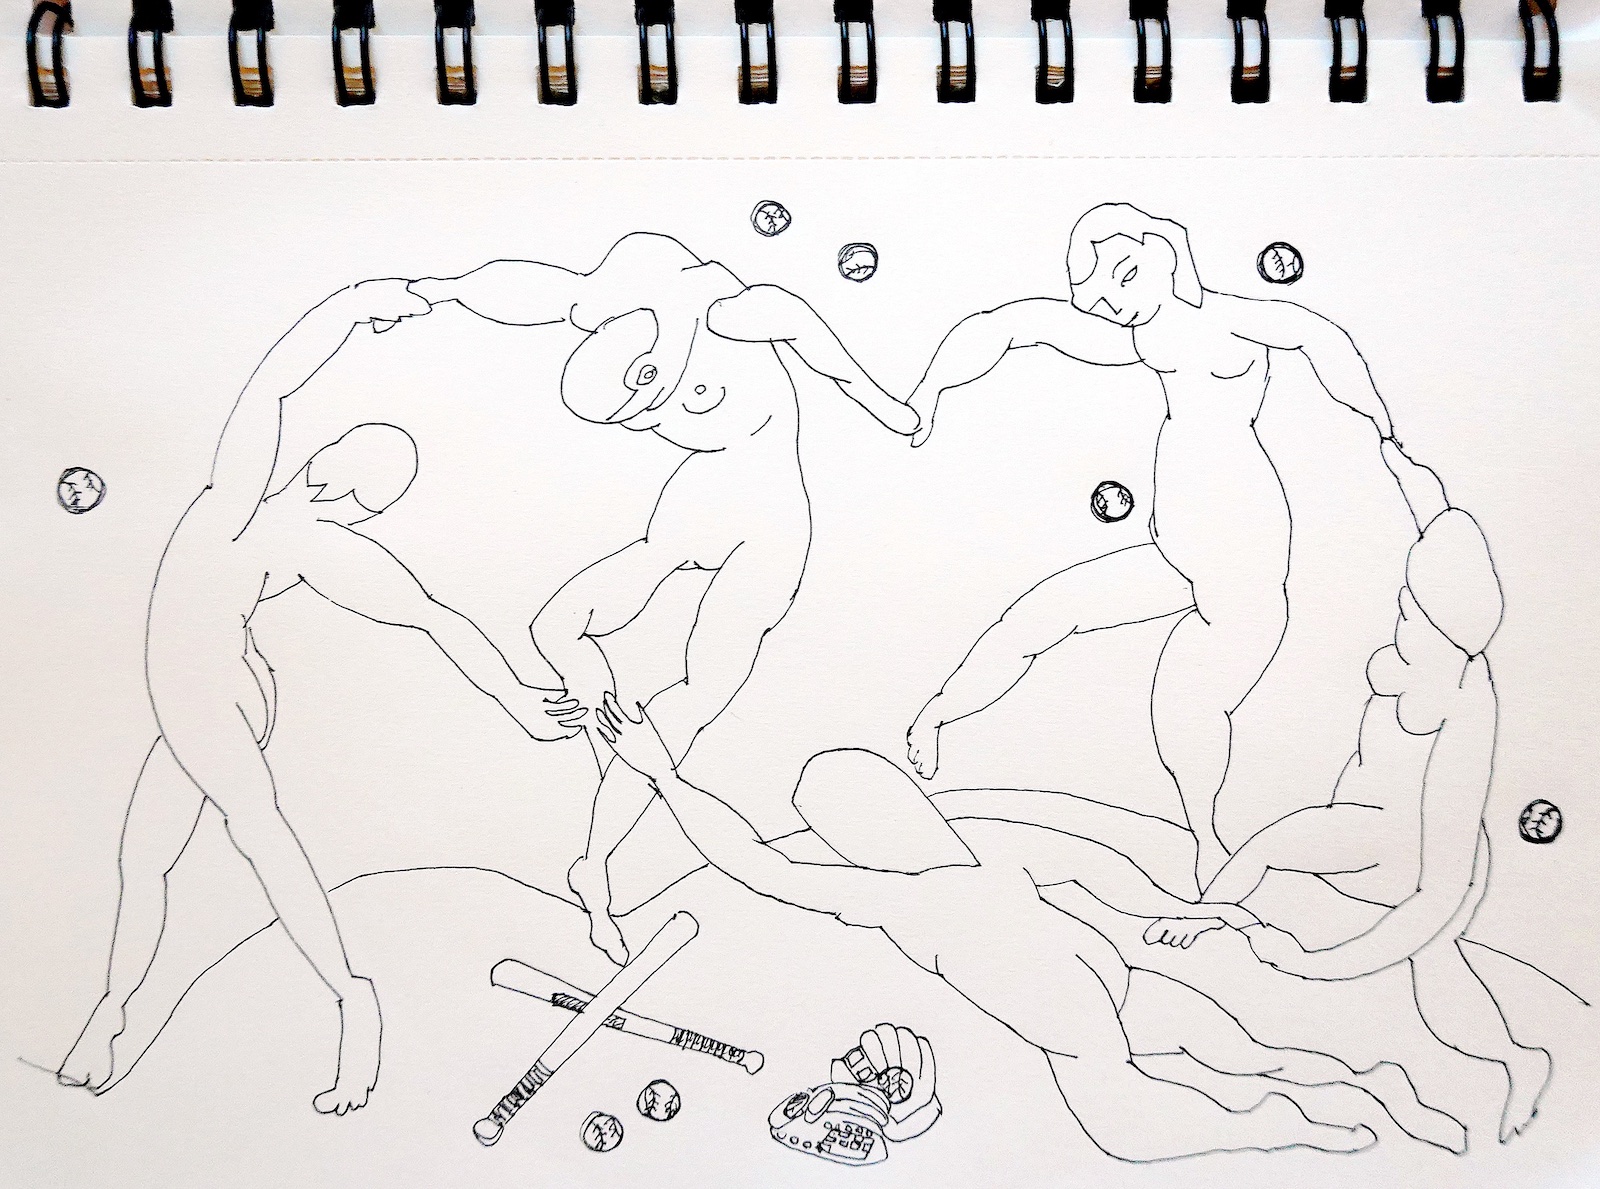 手をつないで踊る裸の人間。ところどころに野球のバットとボール。ヴィヴィアン佐藤によるマチスの絵画をイメージした鉛筆画